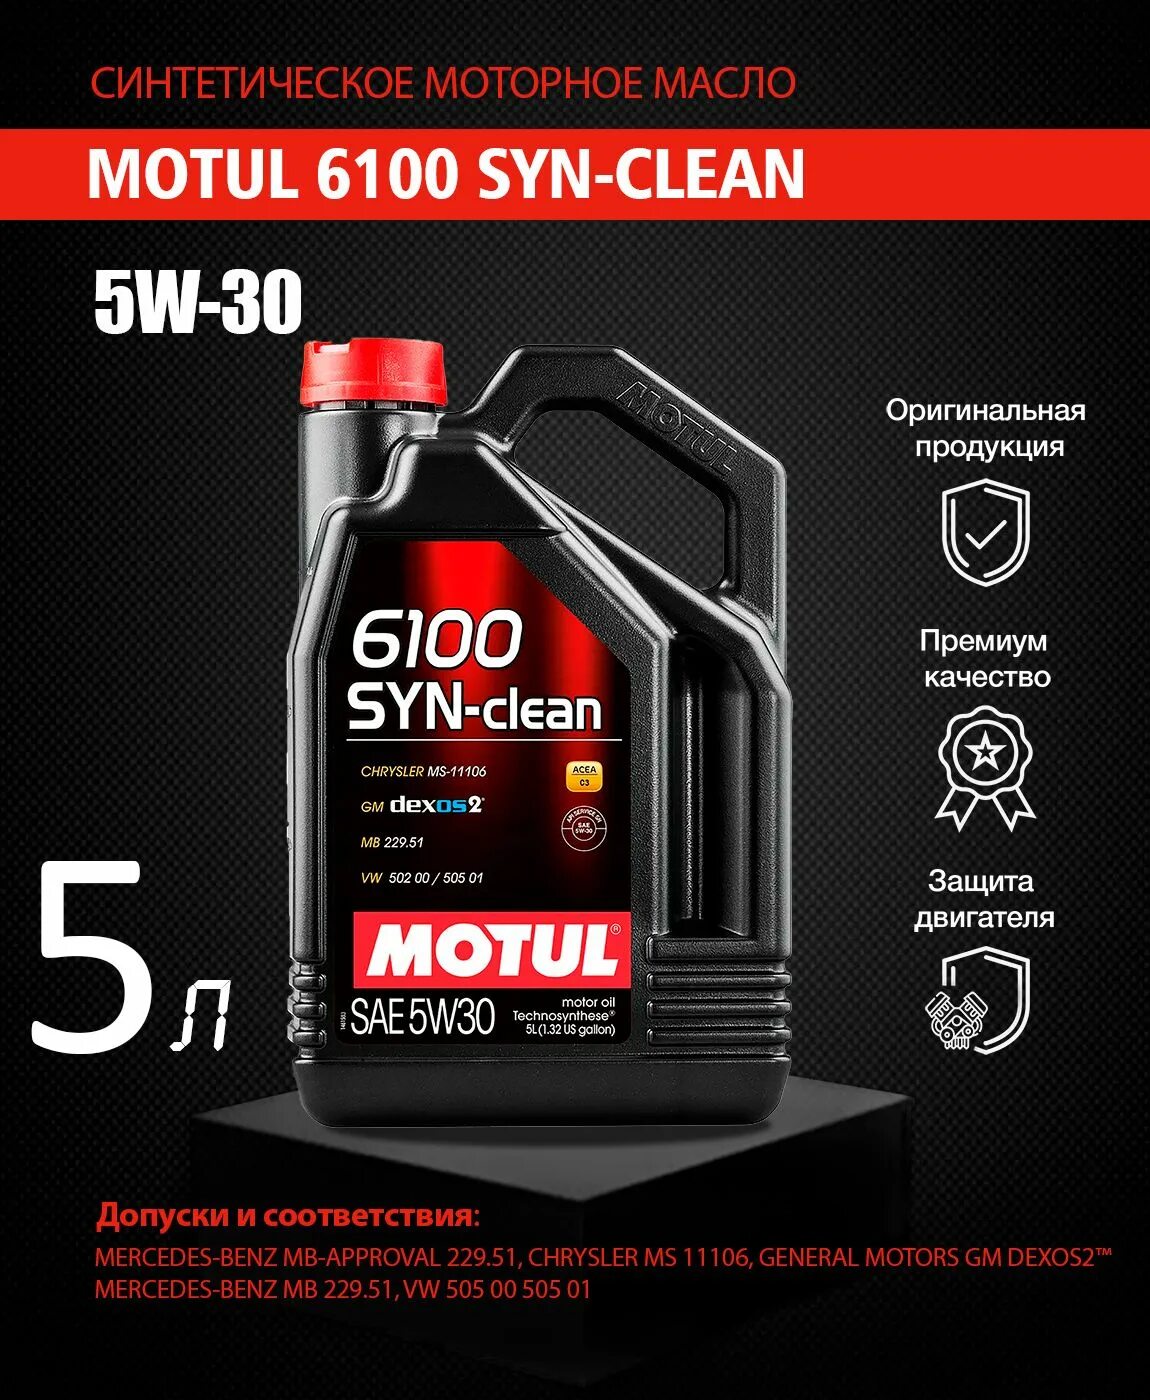 Motul 6100 syn-clean 5w-30. 5w40 Motul syn-clean 6100 4л. Син. Motul 6100 save-Lite 5w-20. 107948.